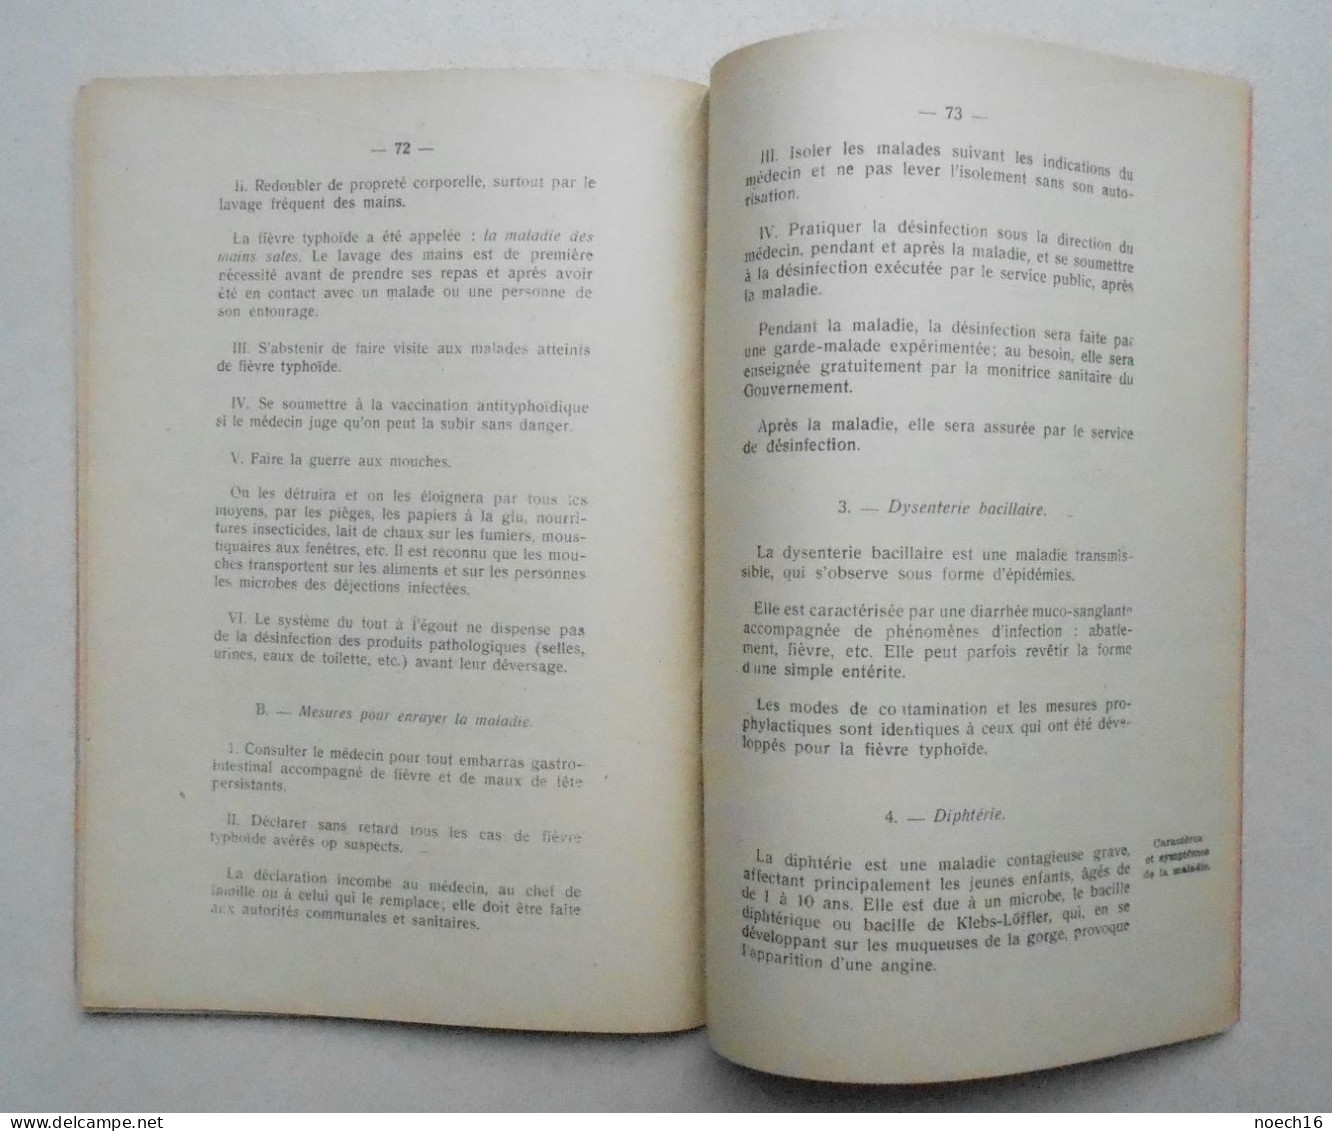 Livret 1943 Instruction aux Enseignants sur les Maladies Contagieuses. Ministère de l'Intérieur et de la Santé publique